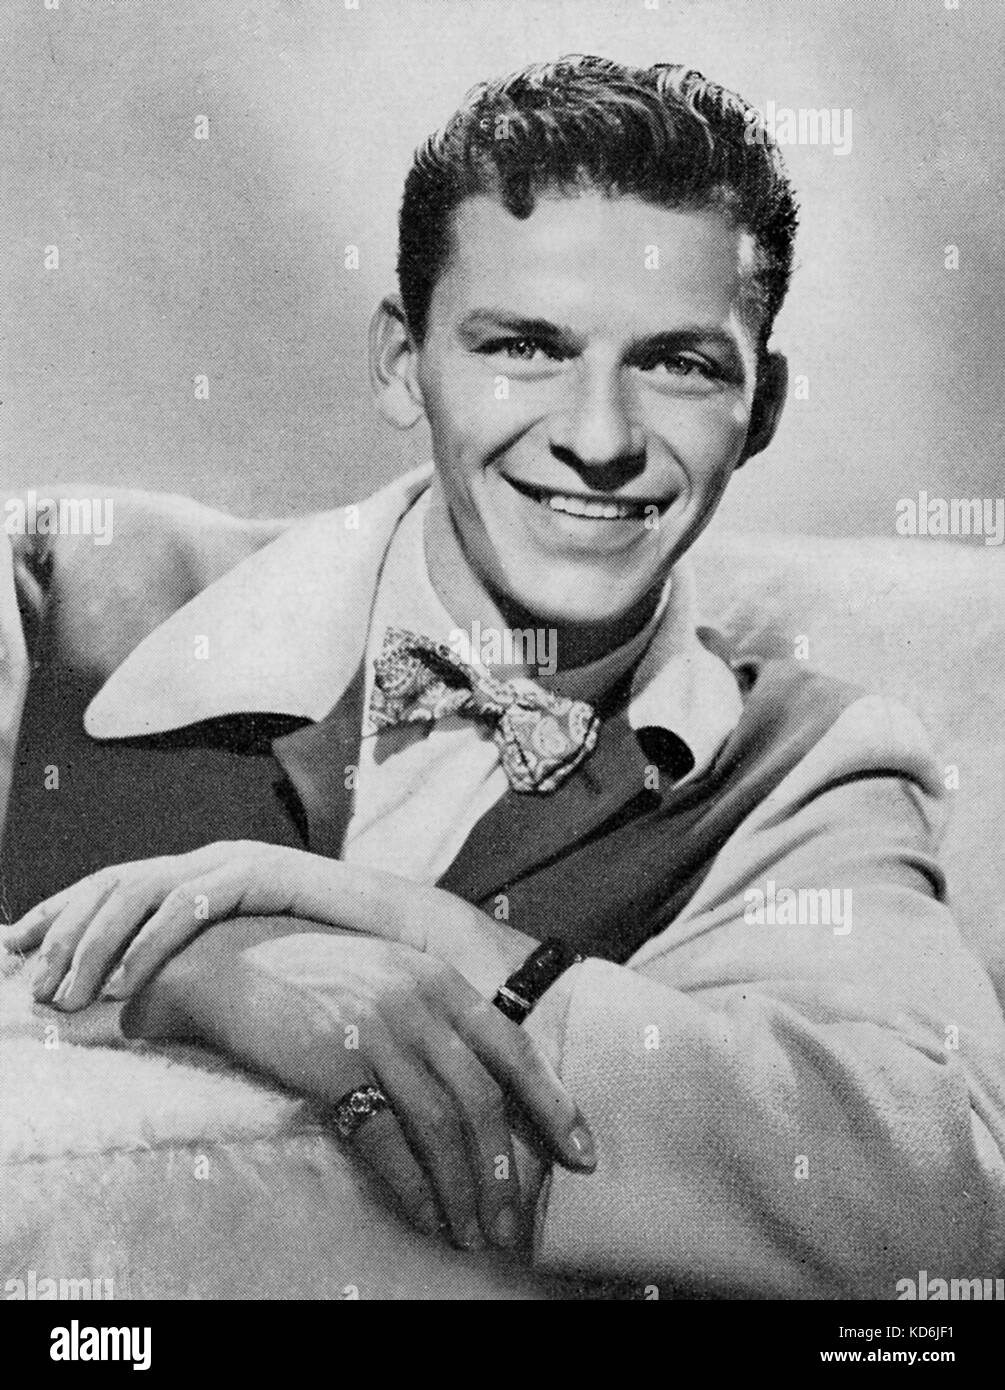 Frank Sinatra, amerikanischer Sänger, Schauspieler und Regisseur, 1915-1998. Nur redaktionelle Verwendung Stockfoto